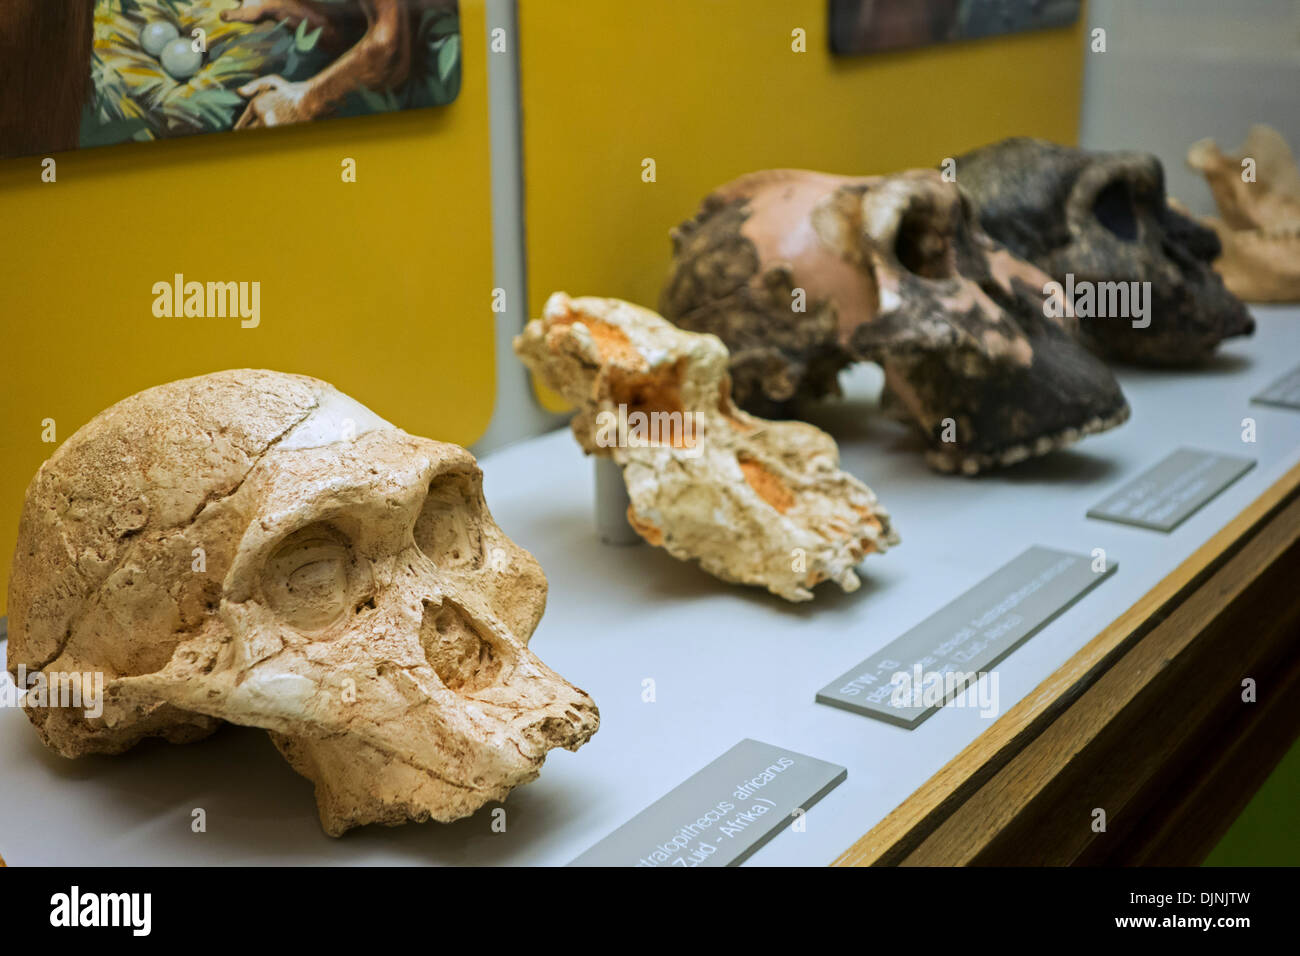 Schädel eines Australopithecus Africanus und Hominini Fossilien in Bezug auf menschliche Evolution, Naturkundemuseum Kina, Gent, Belgien Stockfoto